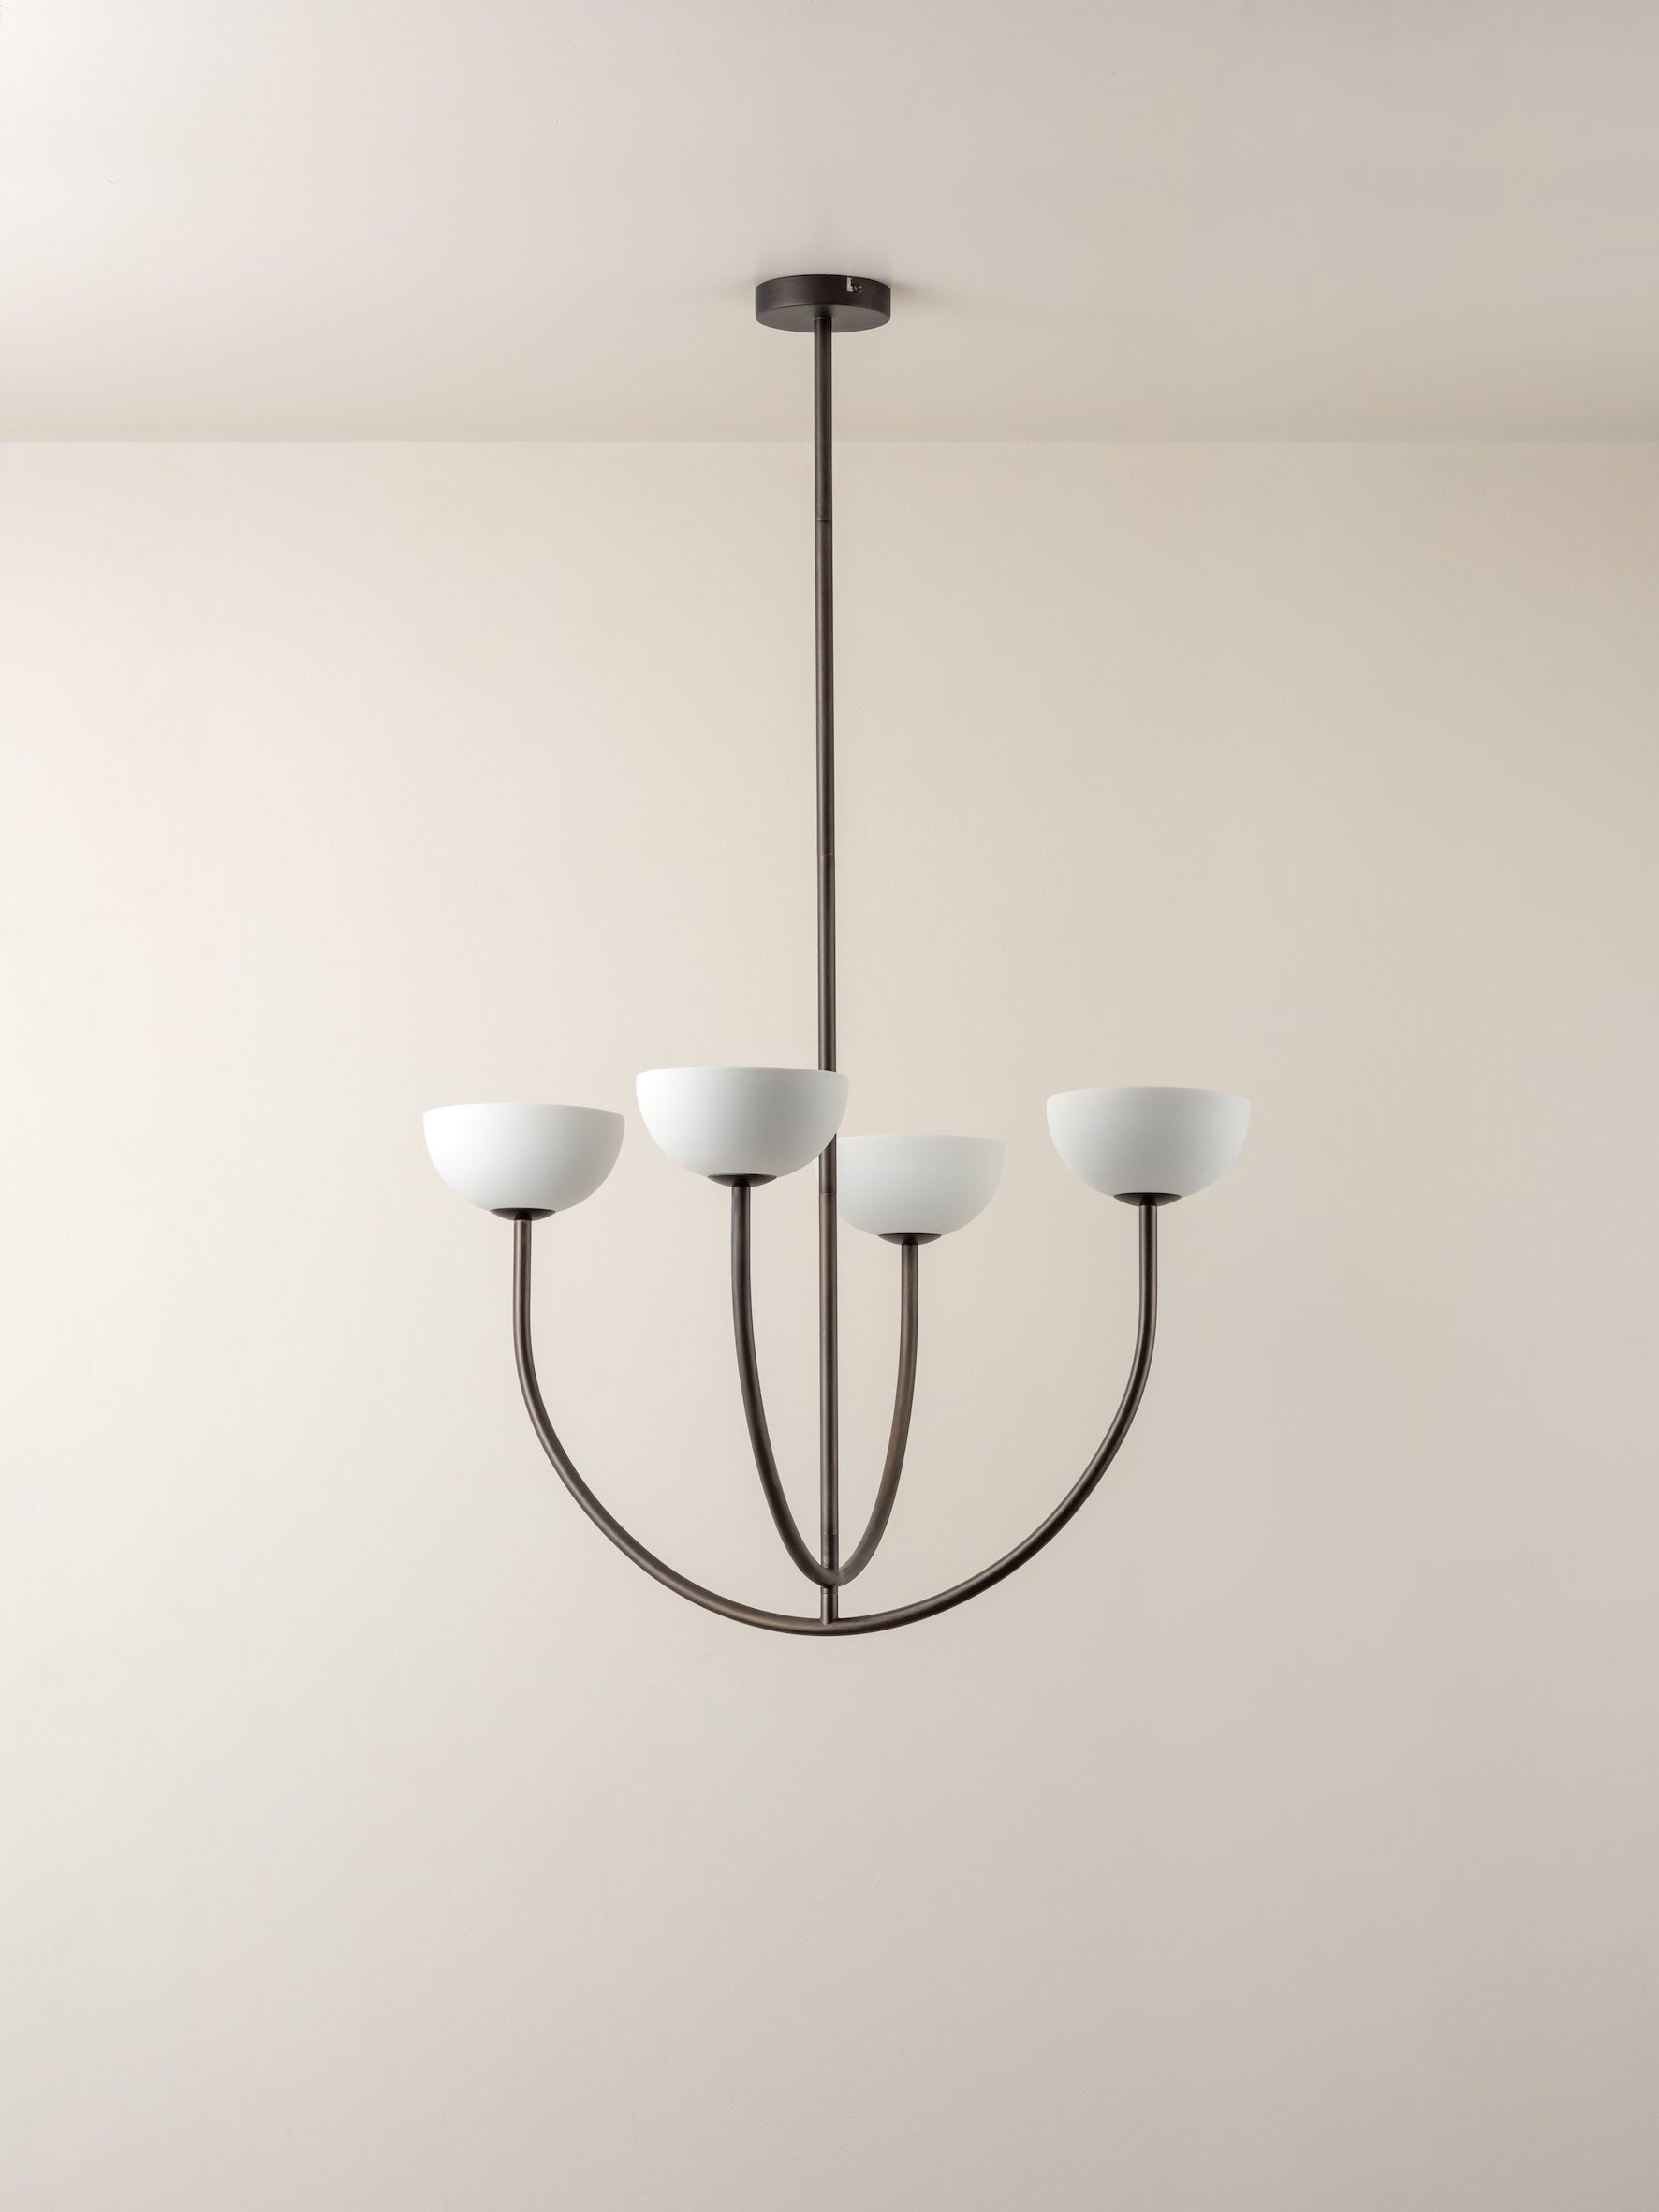 Ruzo - 4 light bronze and porcelain pendant | Ceiling Light | Lights & Lamps | UK | Modern Affordable Designer Lighting